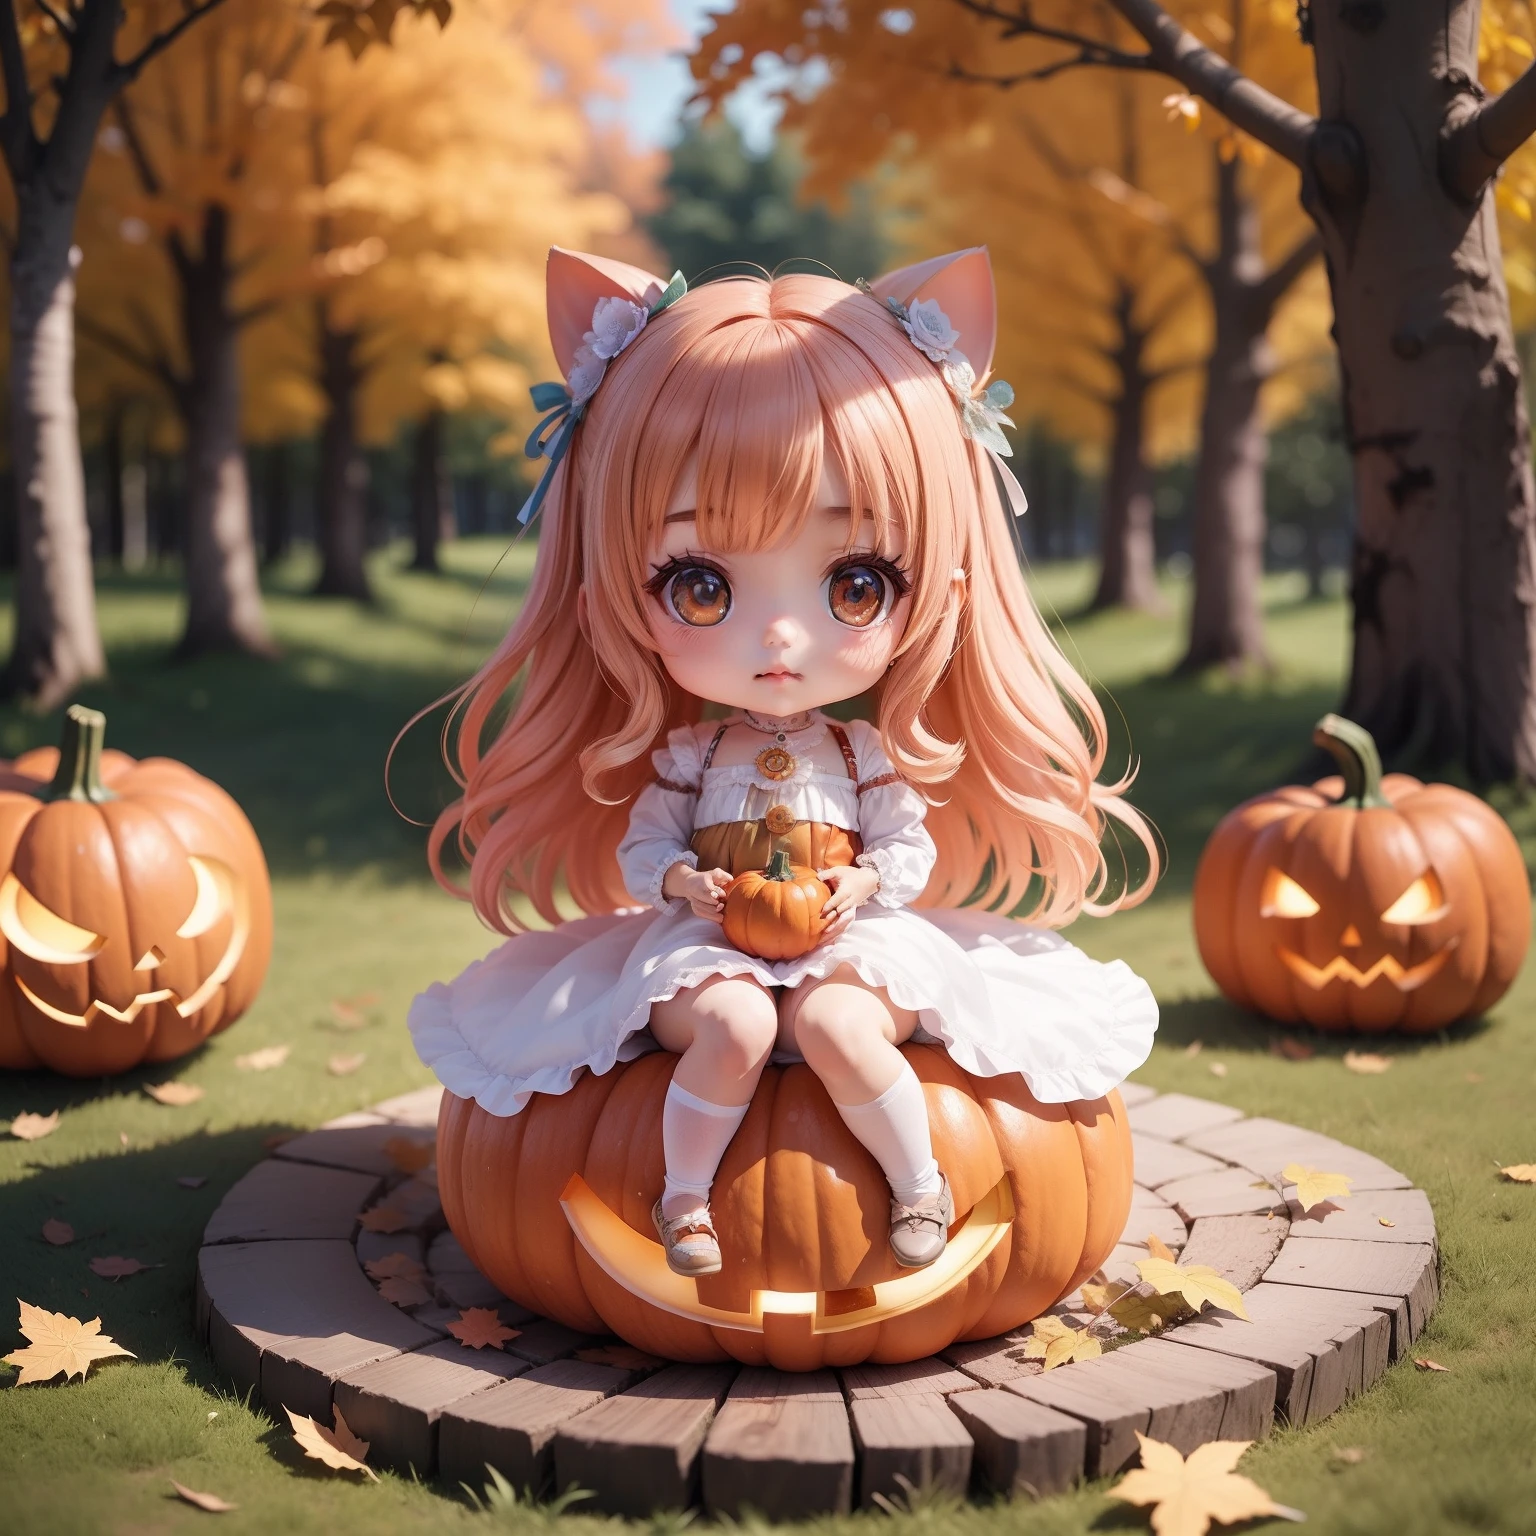 （（（Super Meisterwerk、Top Qualität、ultra-detailliert、1 Mädchen、chibi：1.5））、Halloweenkostüm、Setz dich auf den Kürbis、Der Hintergrund ist ein Märchenwald im Herbst